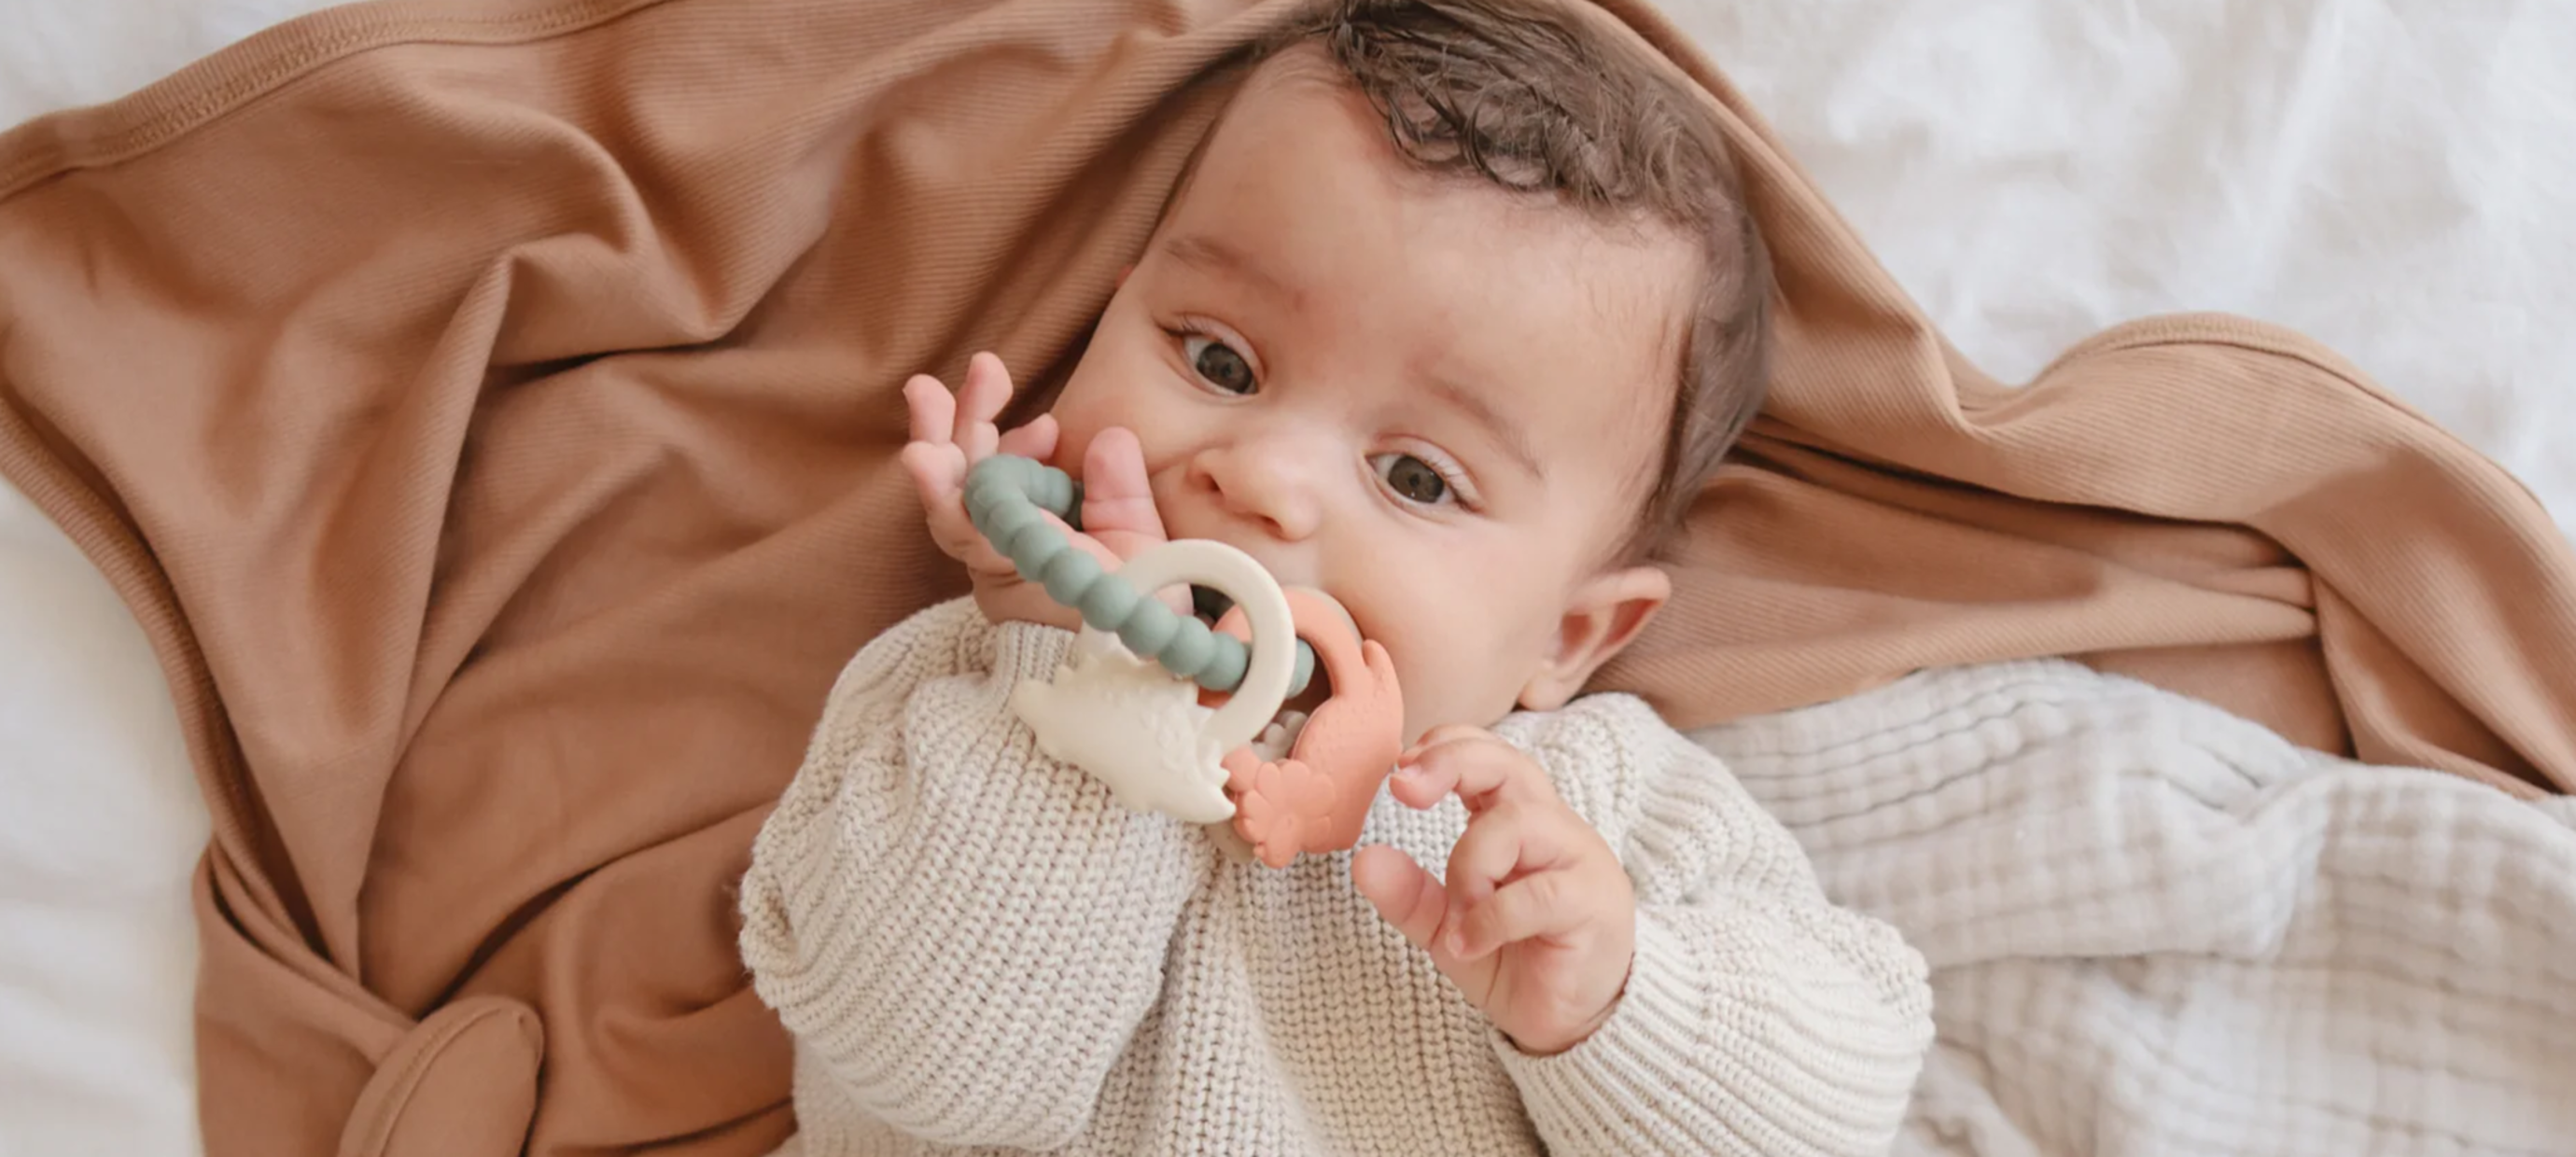 Bijtringen zijn onmisbaar voor je baby's eerste tandjes